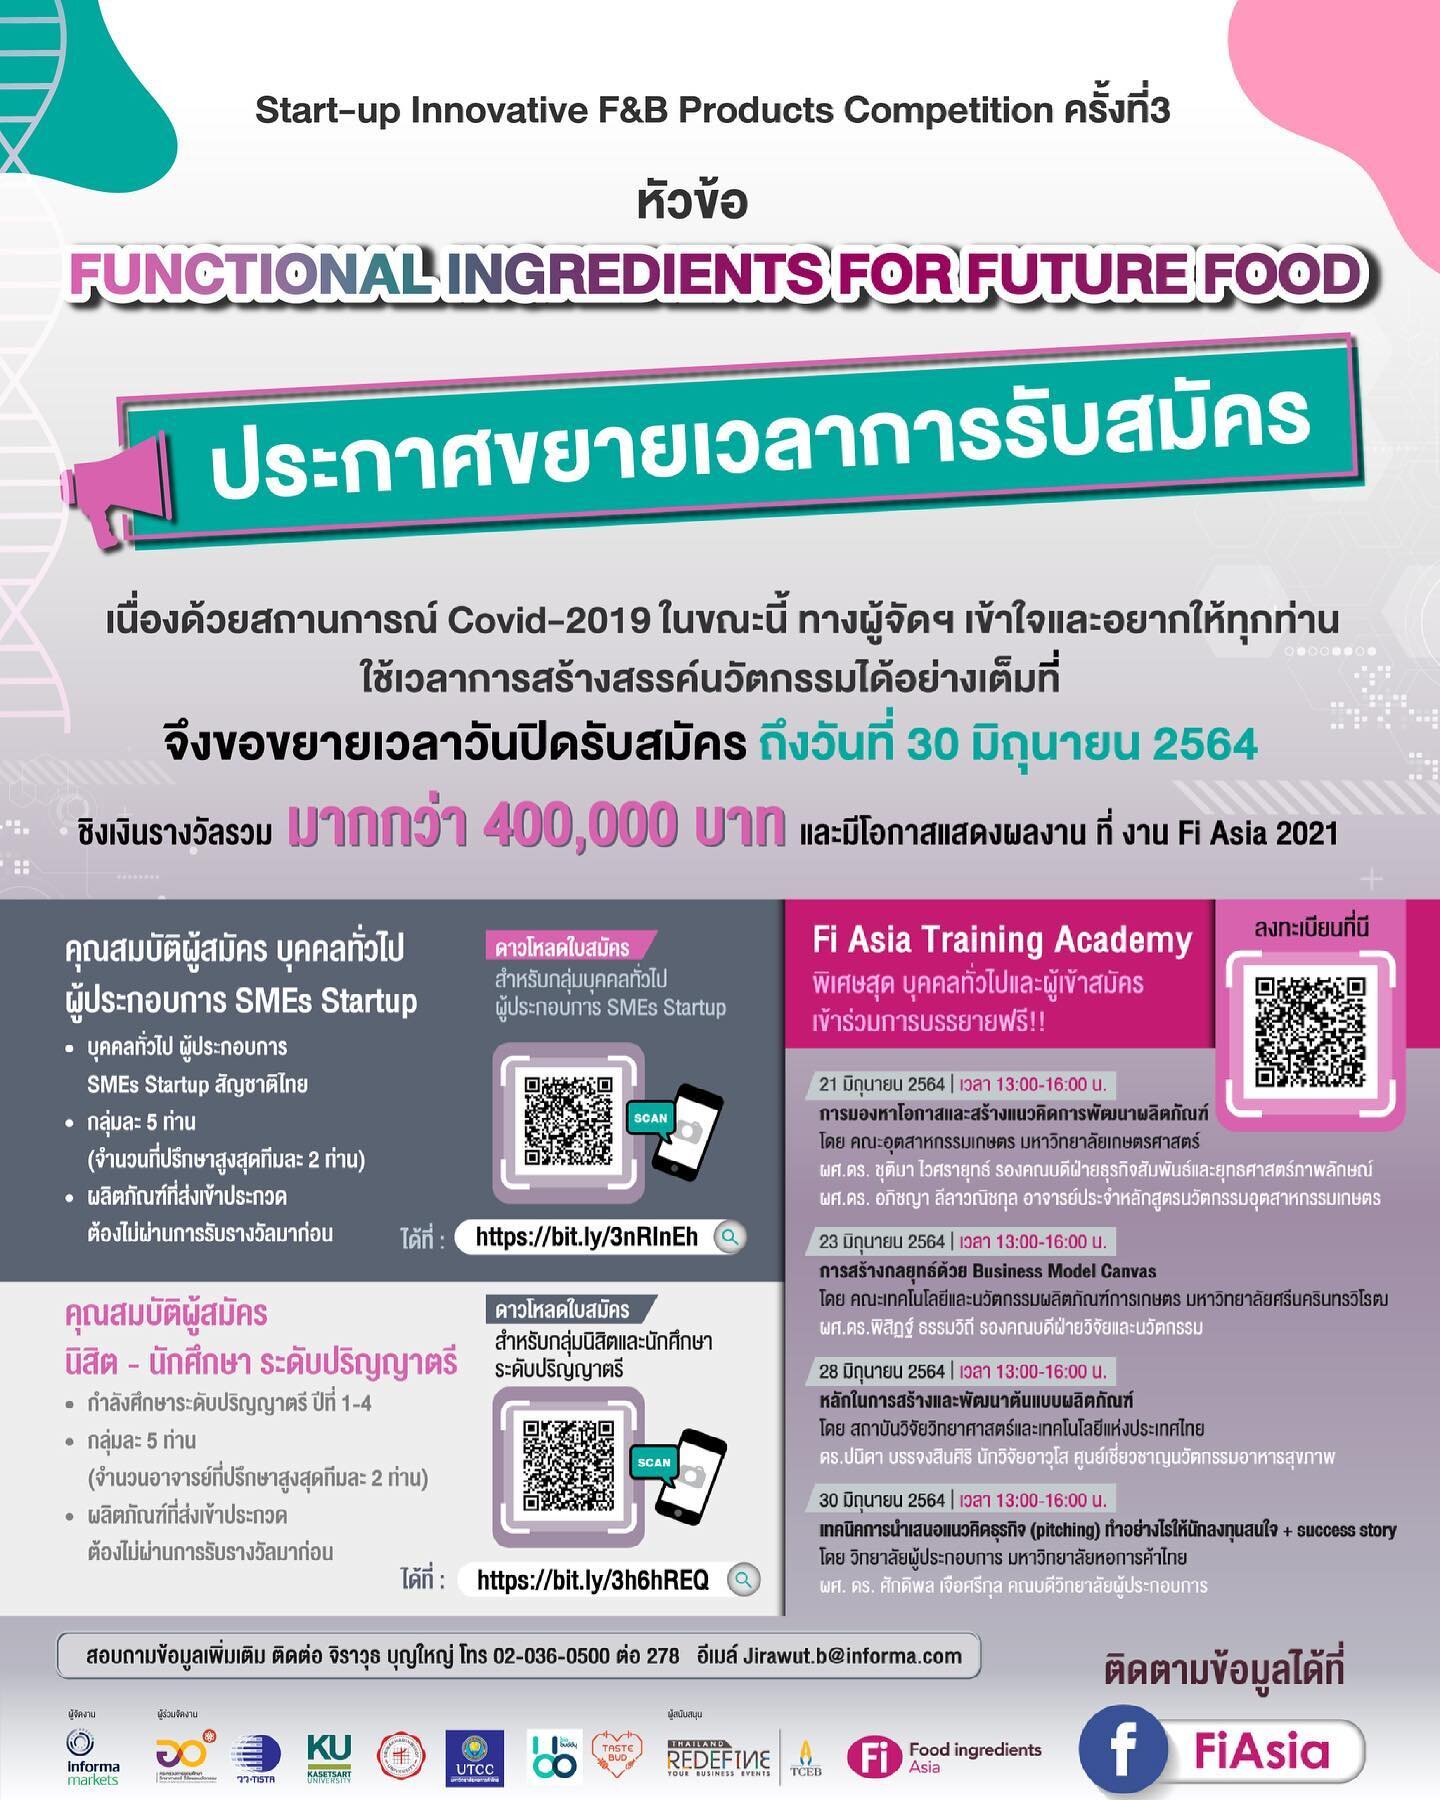 📣 ข่าวดี!!! ขยายเวลารับสมัคร Fi Asia Start-up Innovative F&amp;B Products Competition ครั้งที่3 ในหัวข้อ Functional Food For Future  ออกไปเป็น วันที่ 30 มิถุนายน 2564
(pink laptop) สมัครออนไลน์ได้ในช่องทางเดิม คือ 
สำหรับบุคคลทั่วไป: https://bit.ly/